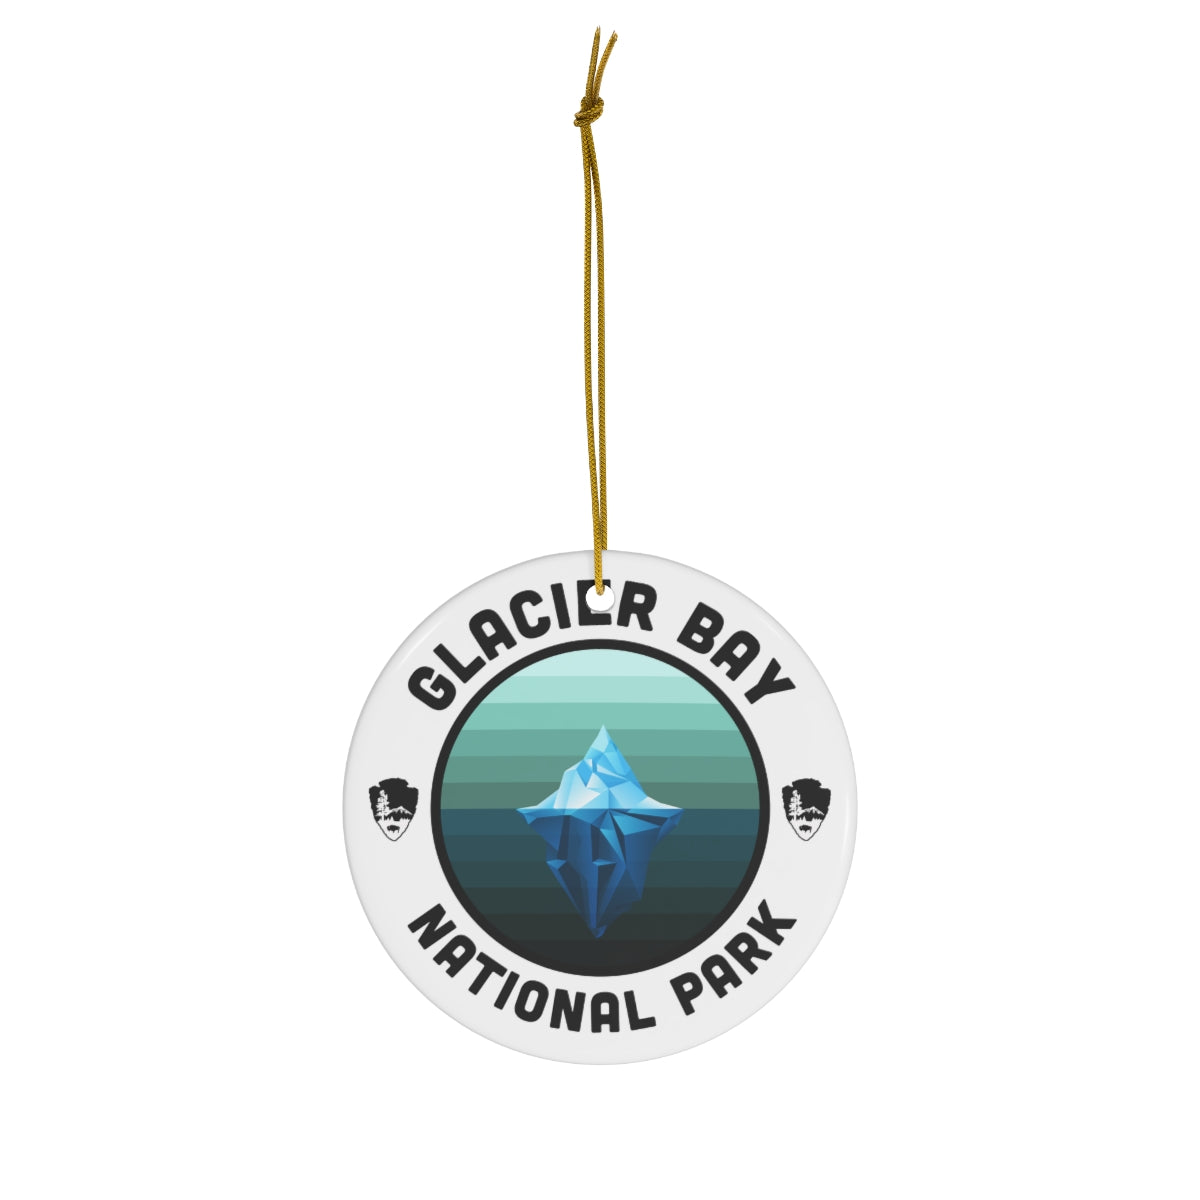 Glacier Bay National Park Ornament - Round Emblem Design